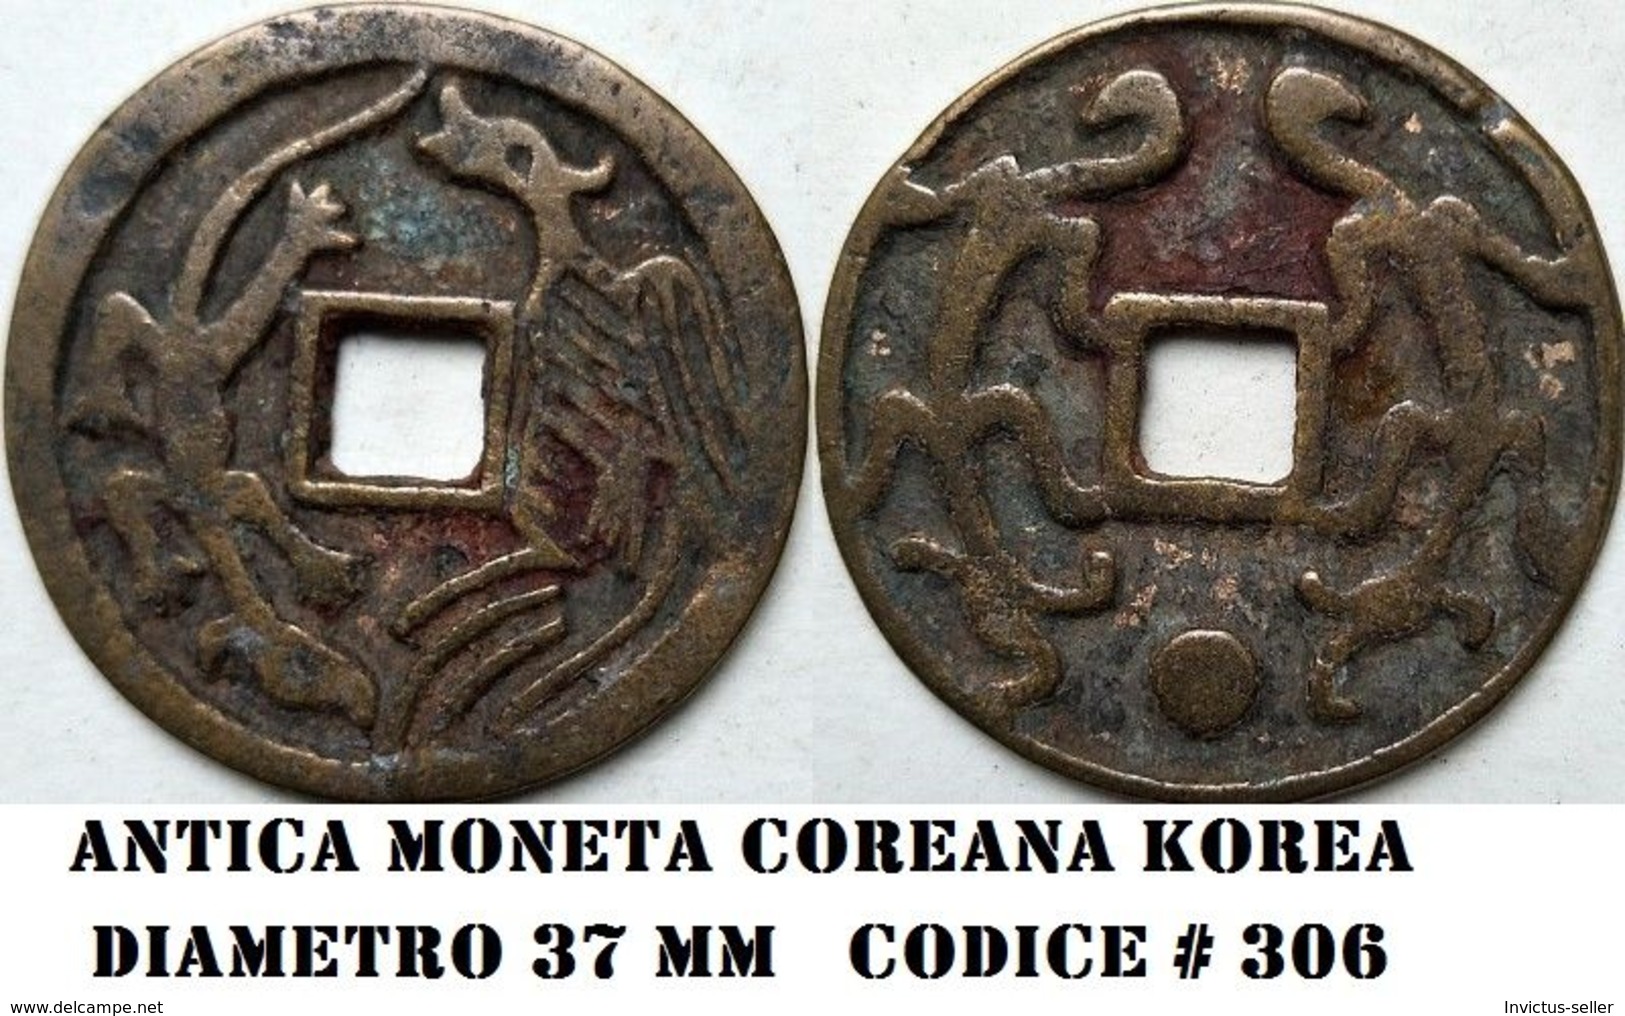 KOREA ANTICA MONETA COREANA PERIODO IMPERIALE IMPERIALE COREANE COINS  PIECES MONET COREA IMPERIAL COD #306 - Corée Du Nord